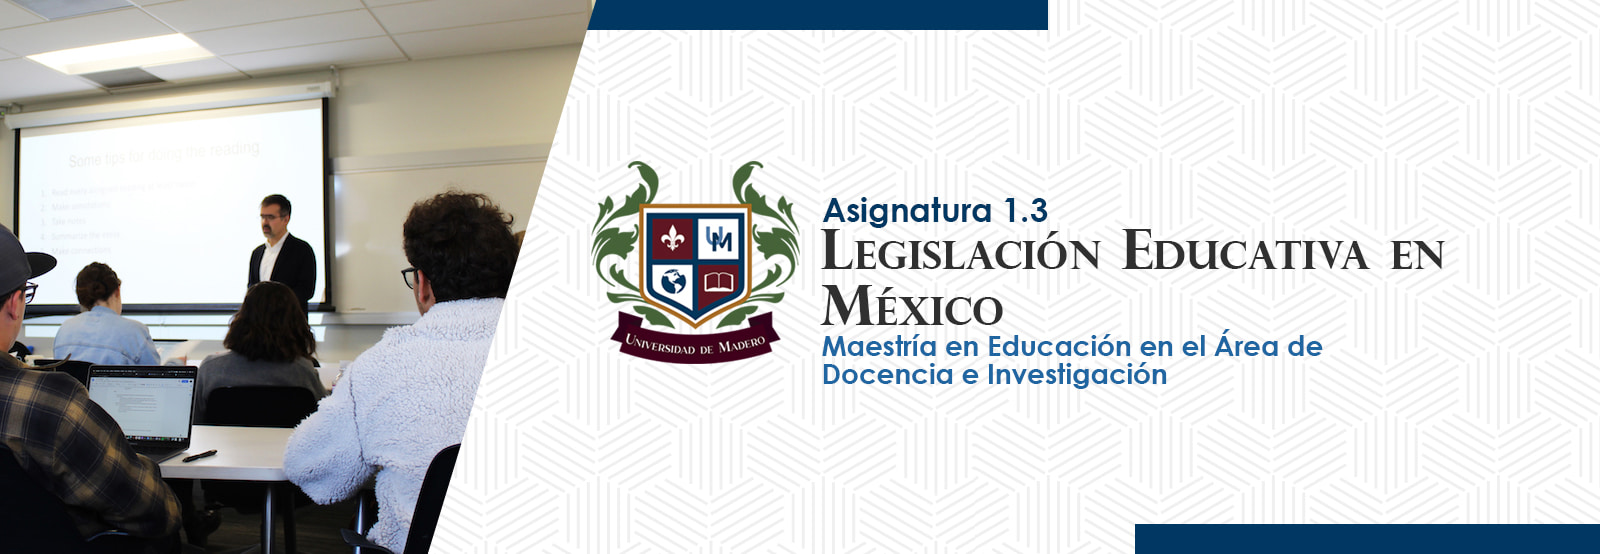 MEADI0103 Legislación Educativa En México